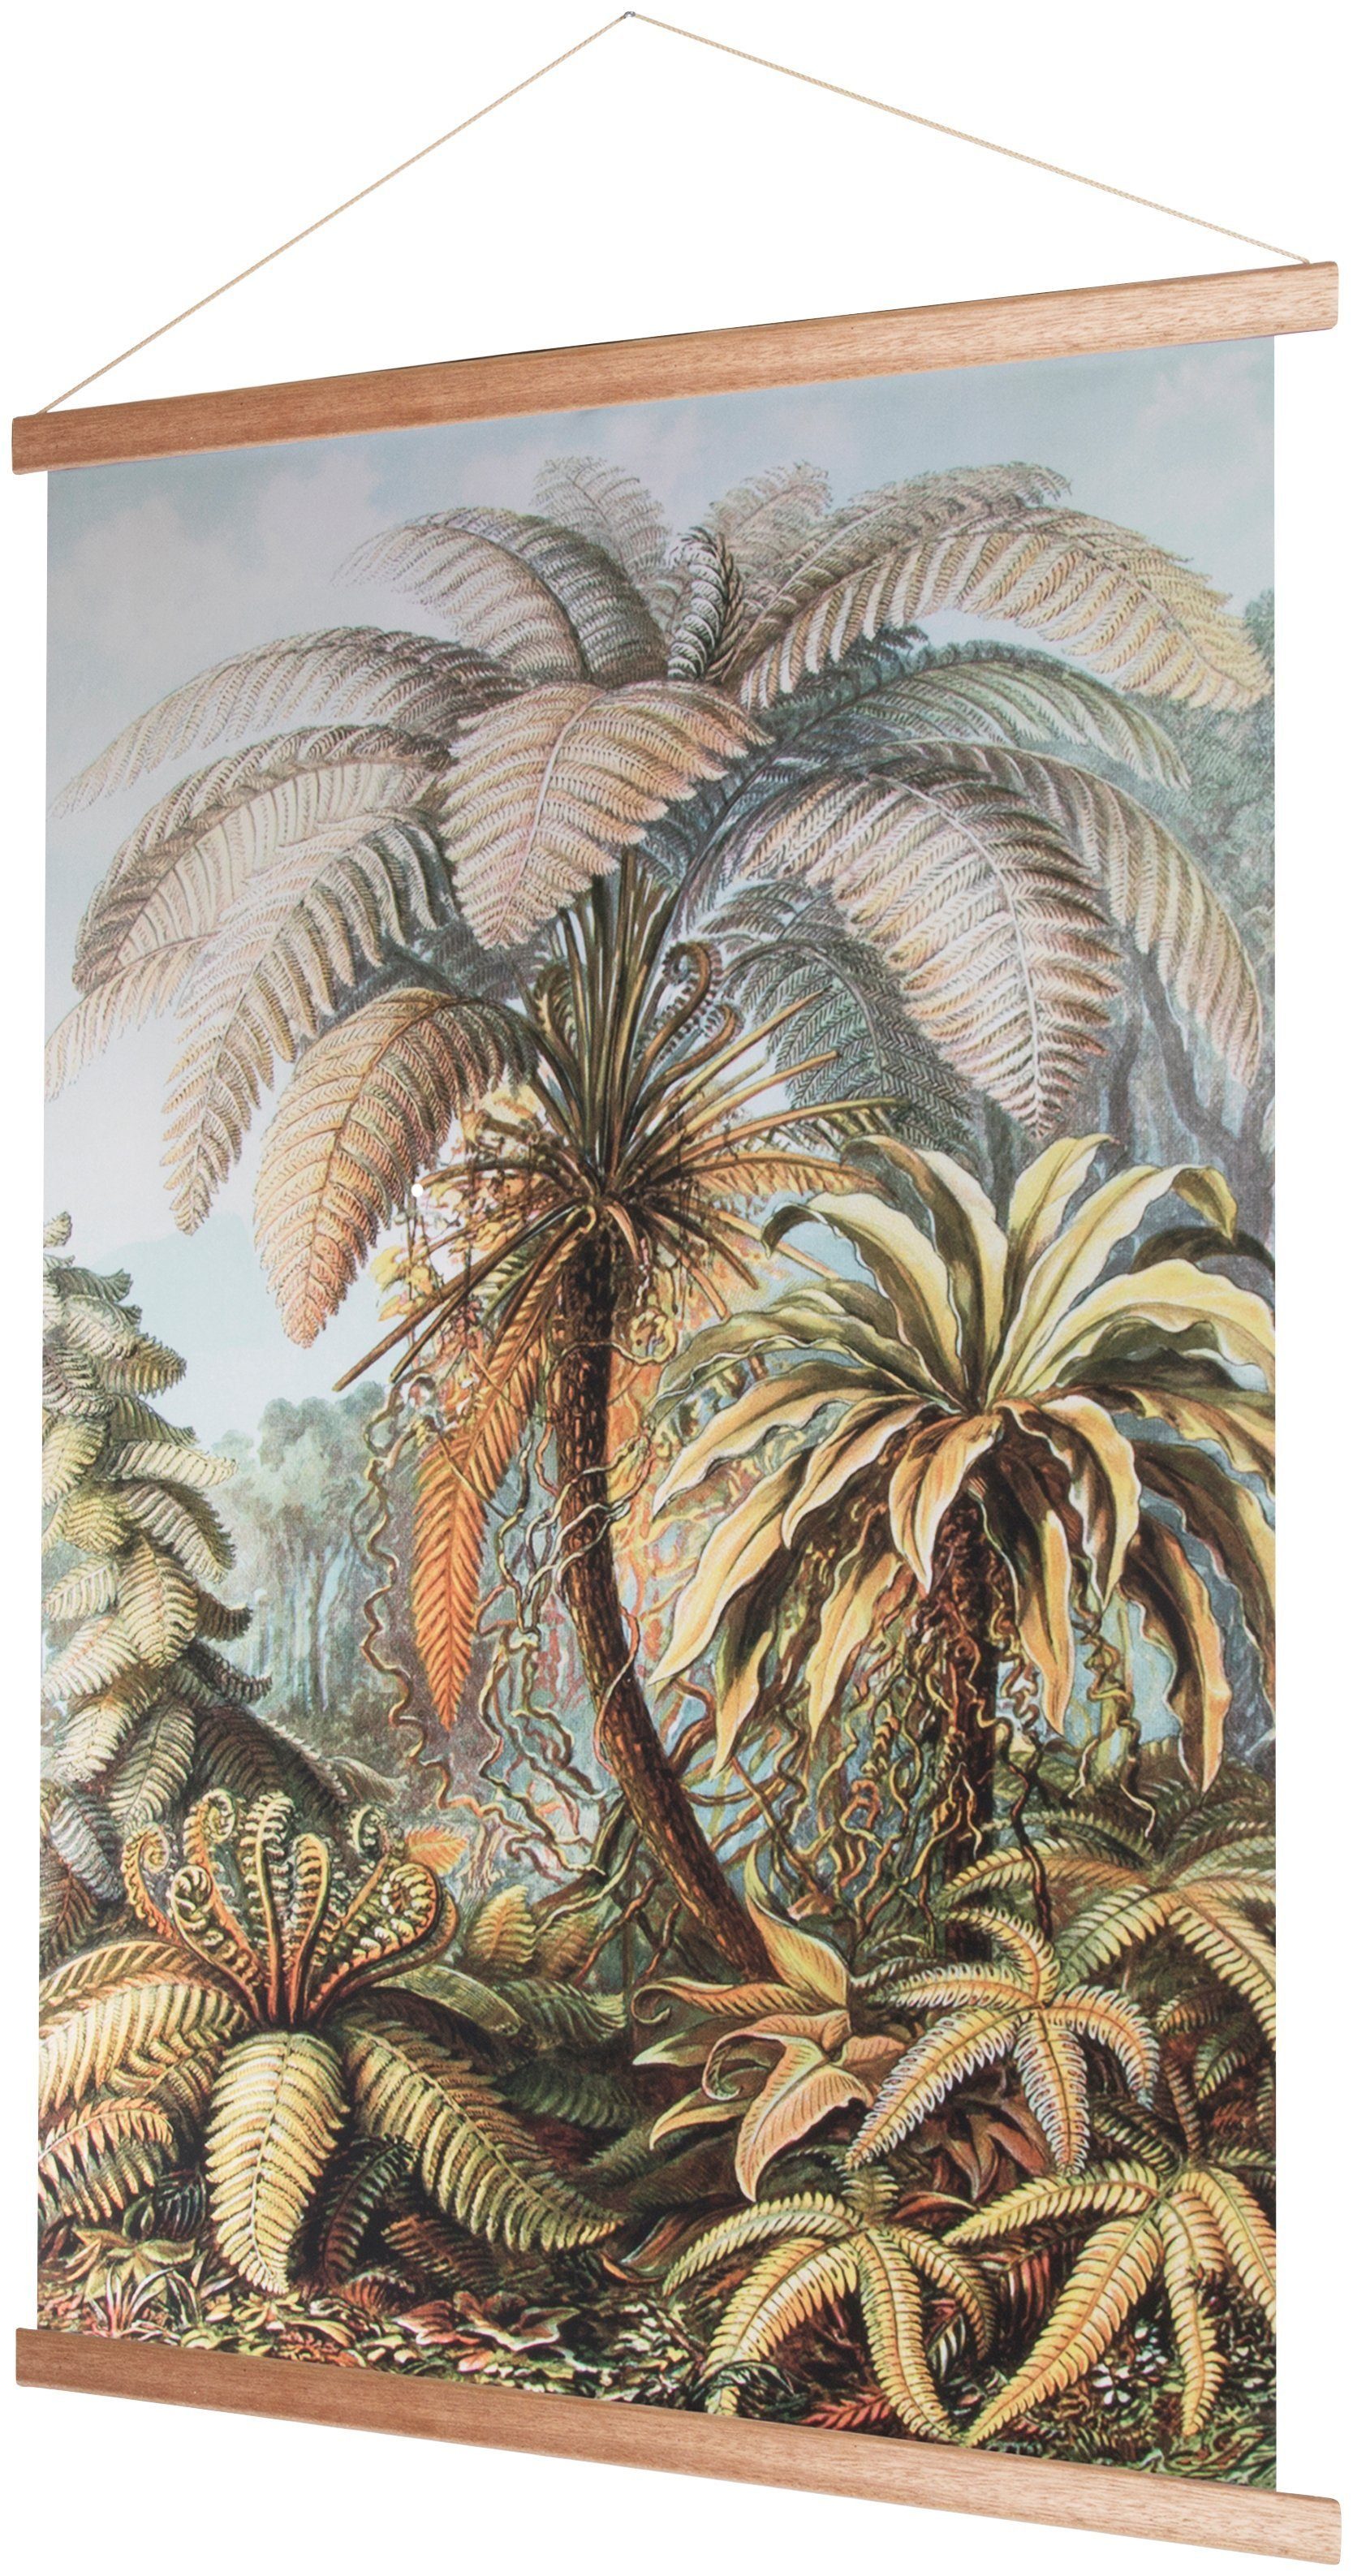 Art for the Poster Poster, home Wandposter Wandbild, Bild, Pflanzen, 100x70cm, Dschungel